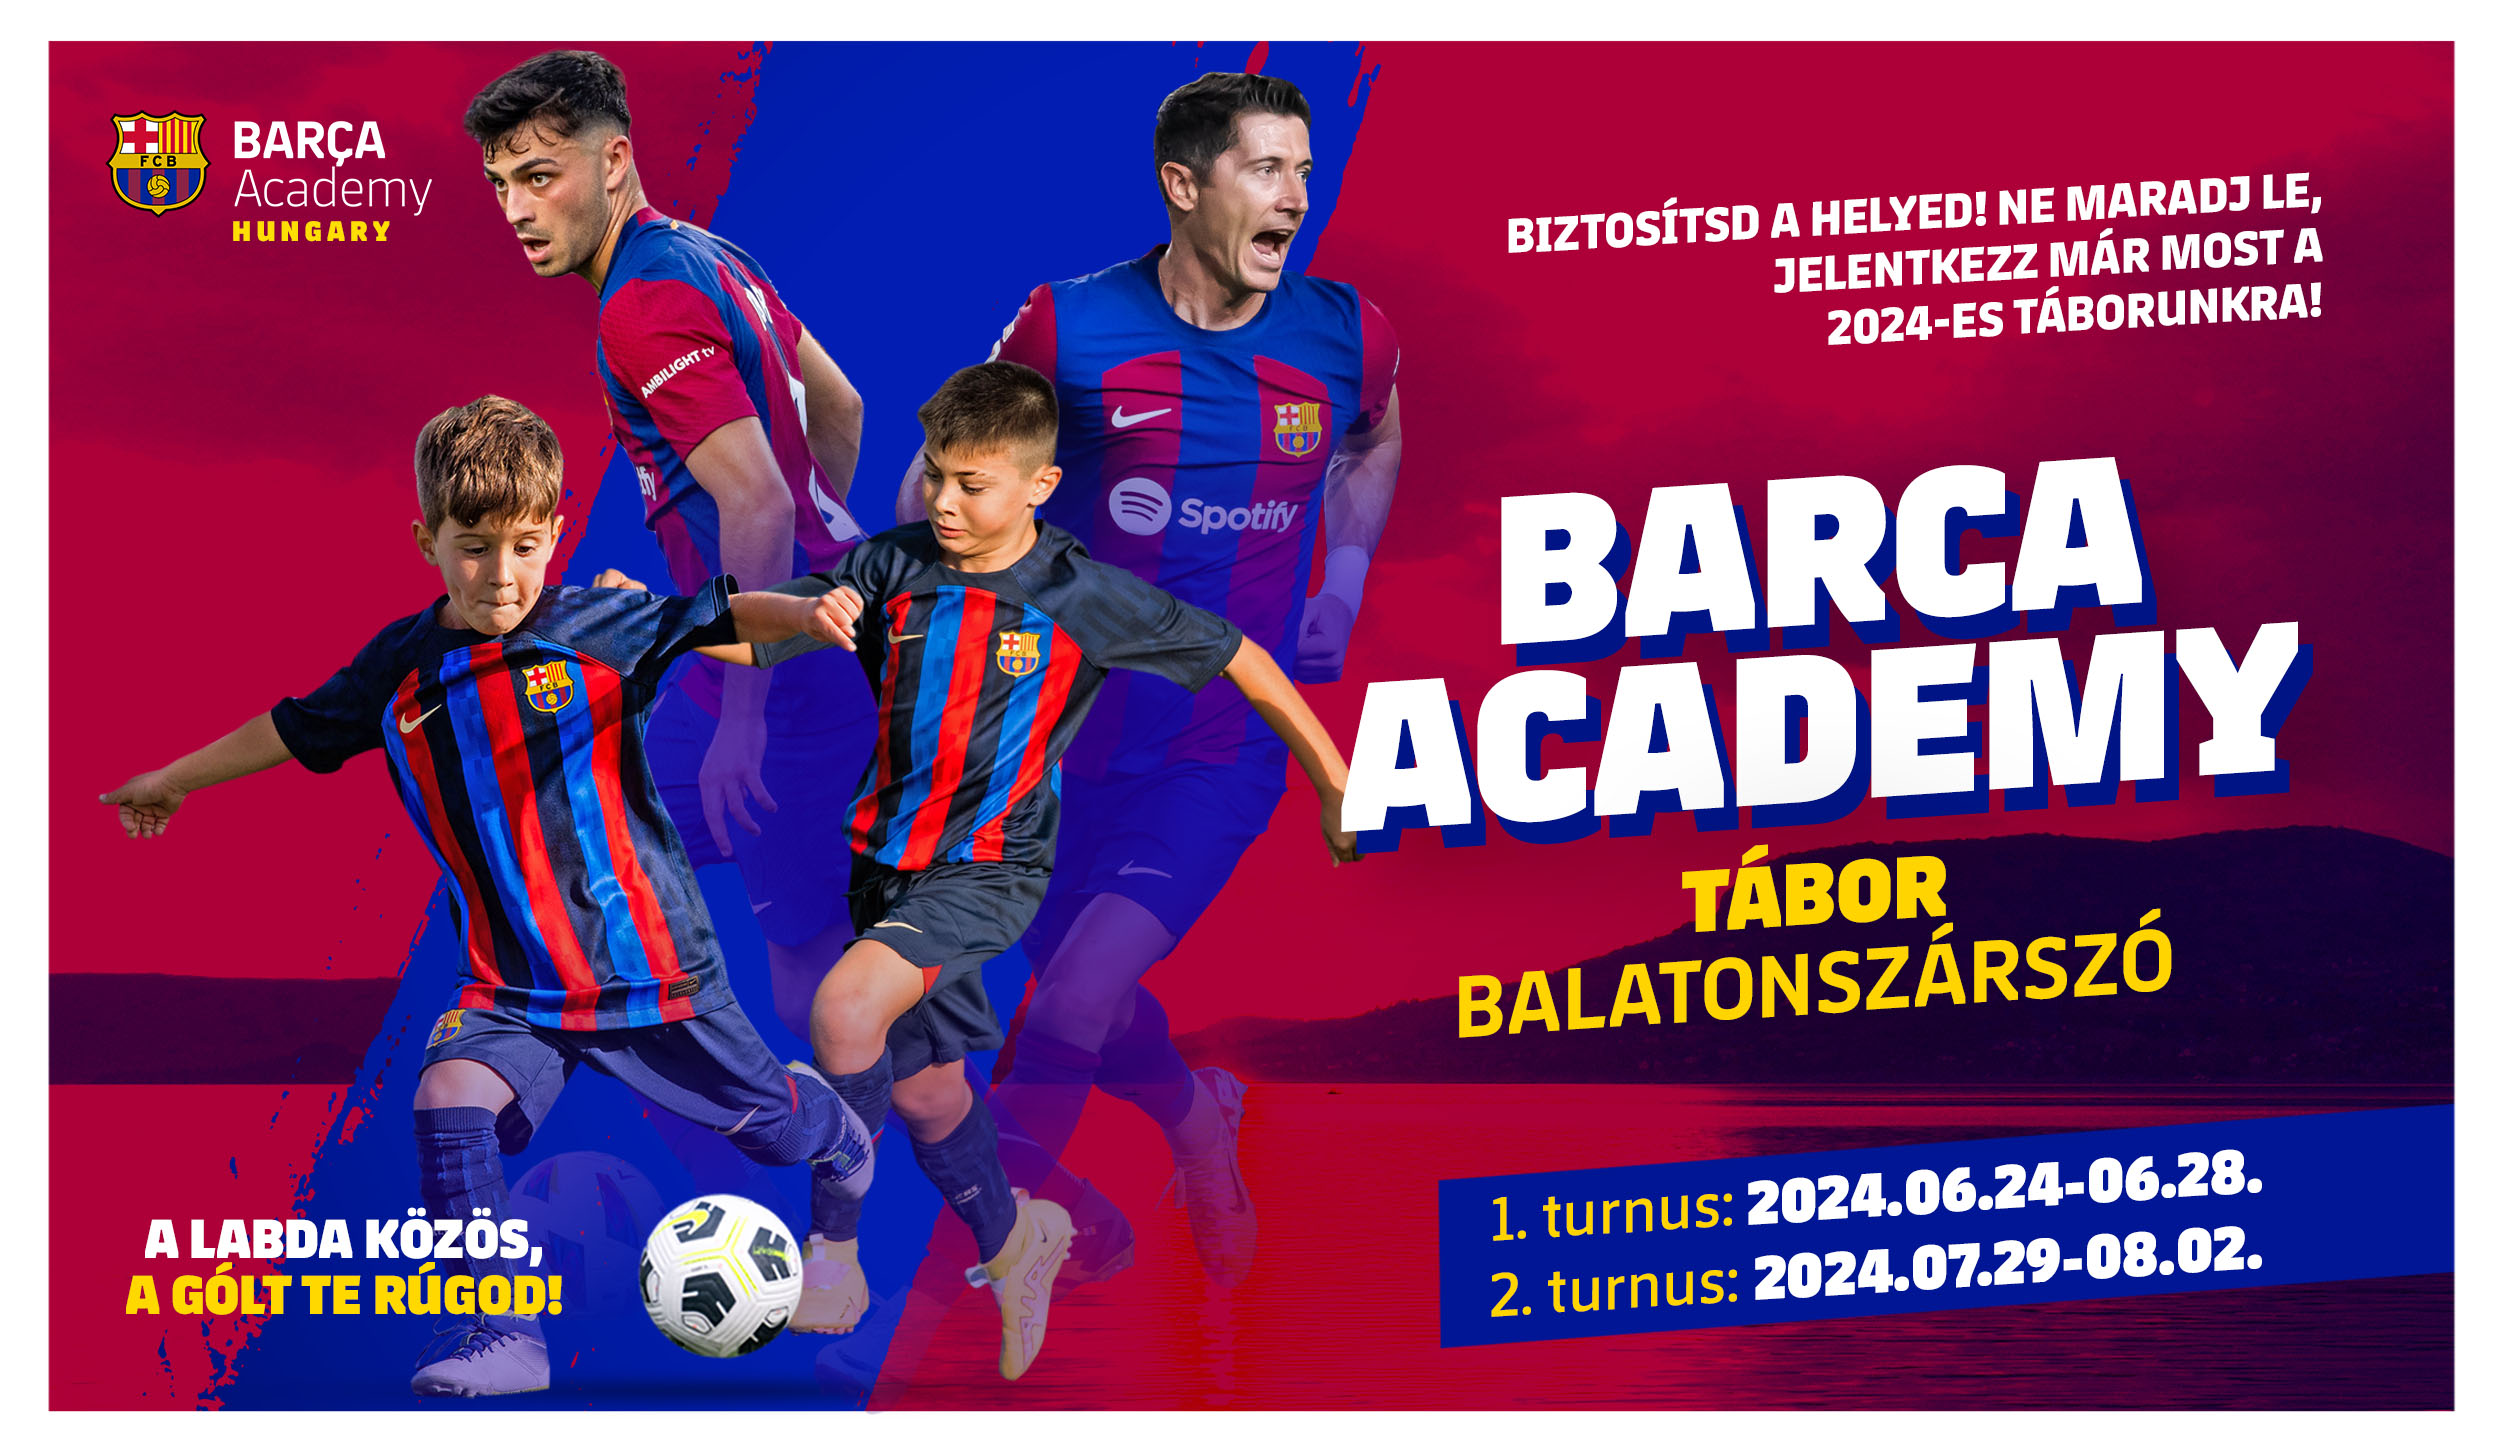 Barca Academy - Balatonszárszói nyári tábor